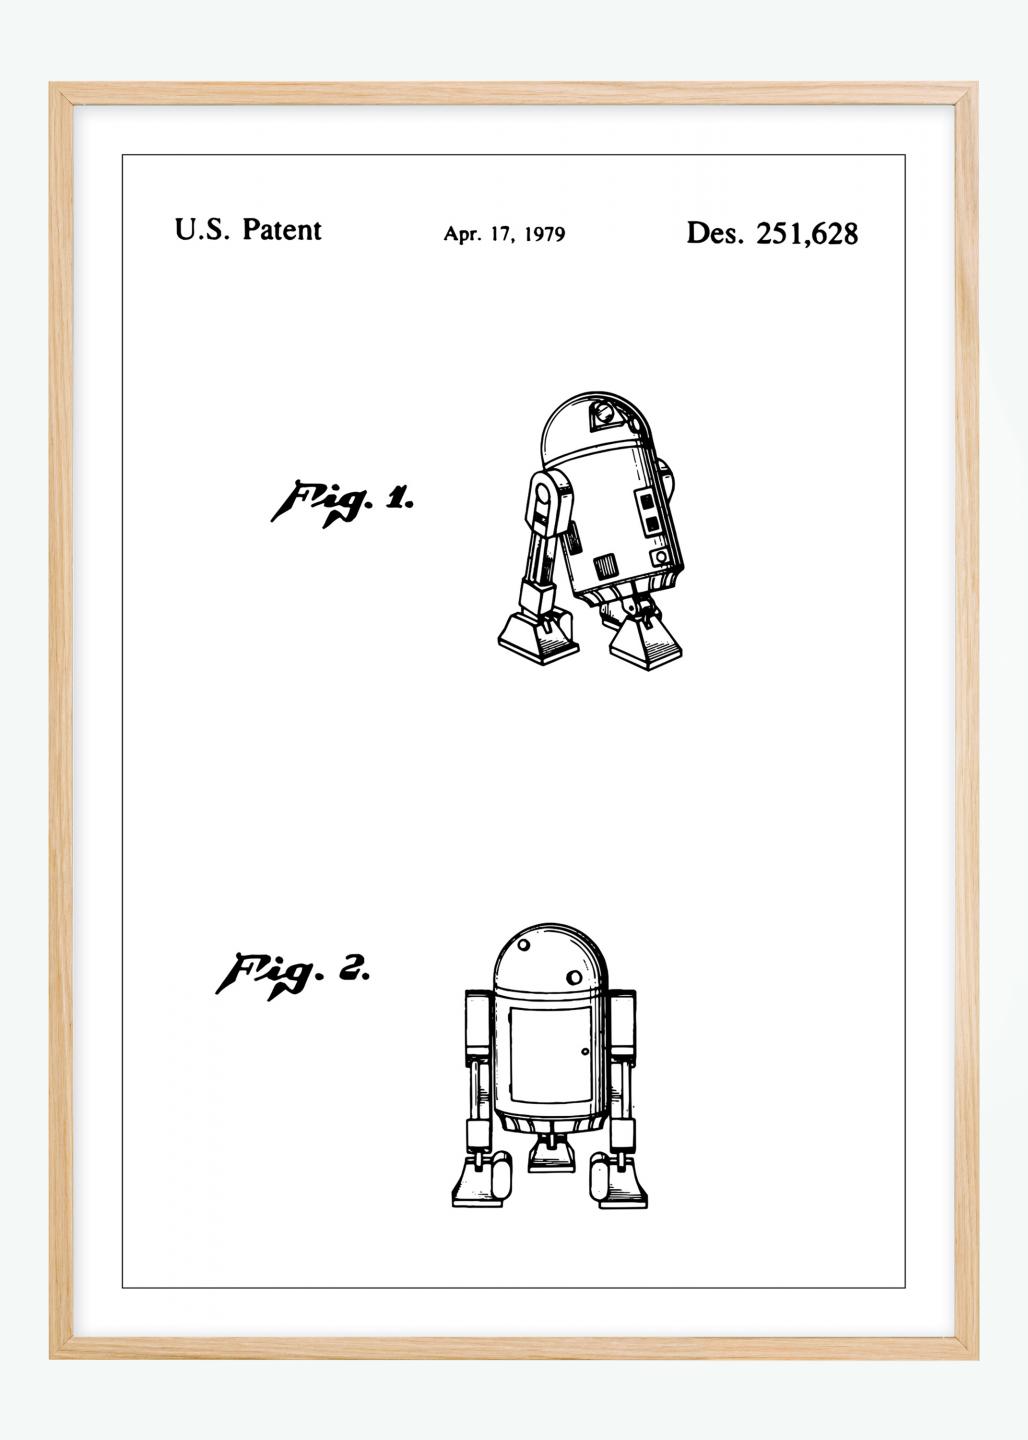 Køb Patenttegning - Star Wars - R2-D2 Plakat her -